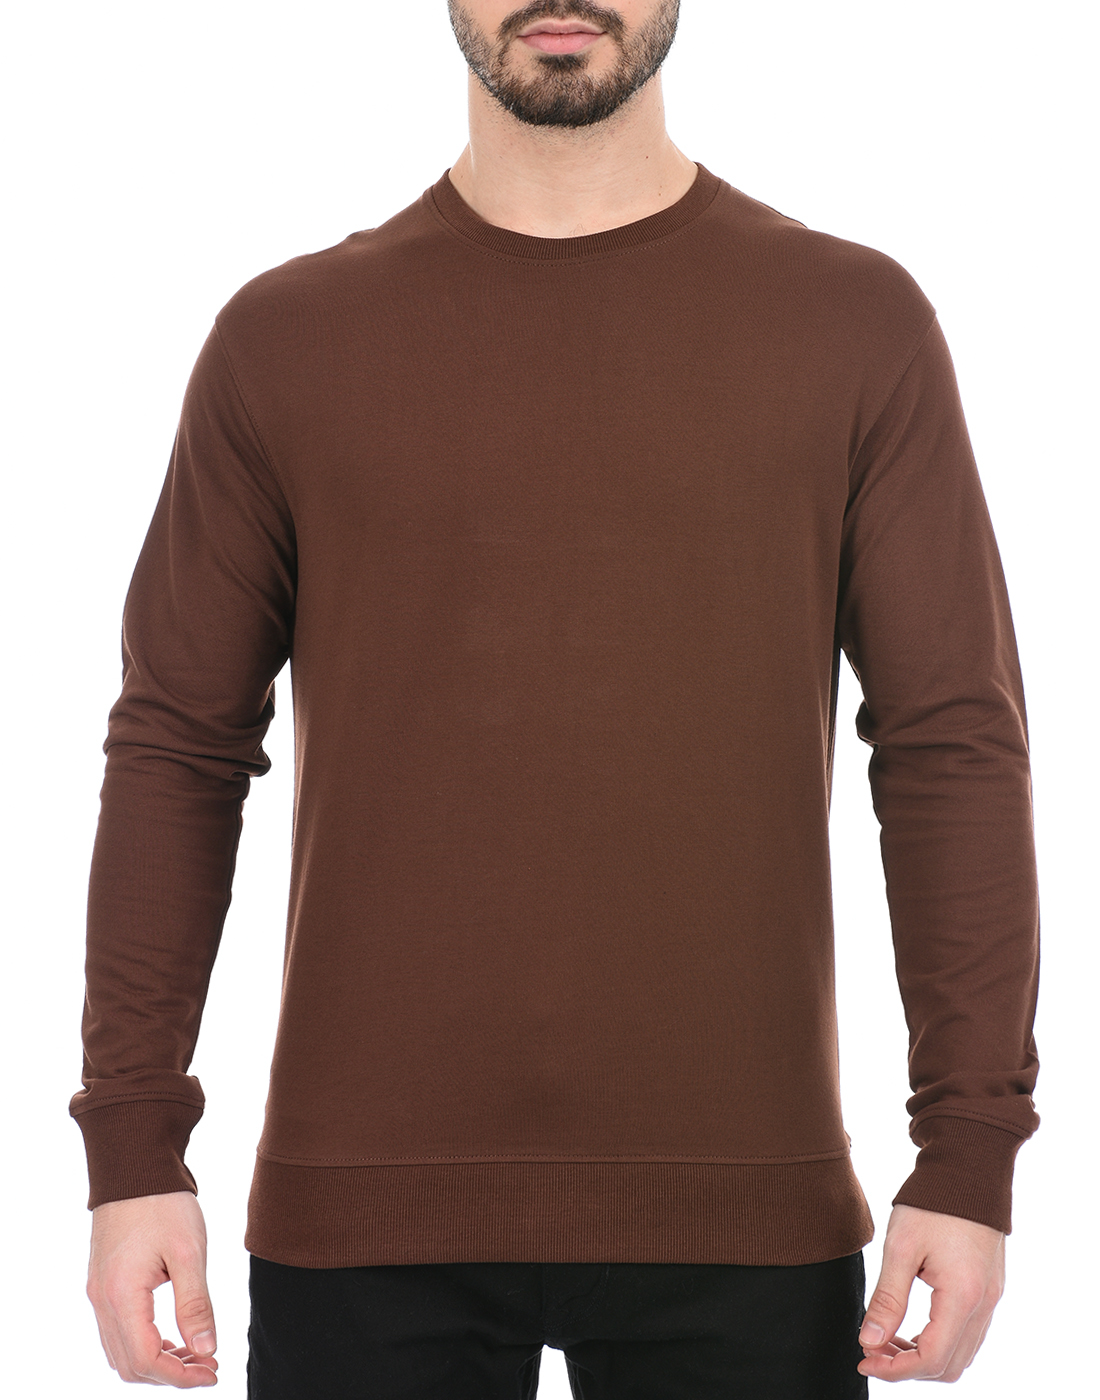 Oneway Men Solid Brown Sweatshirt